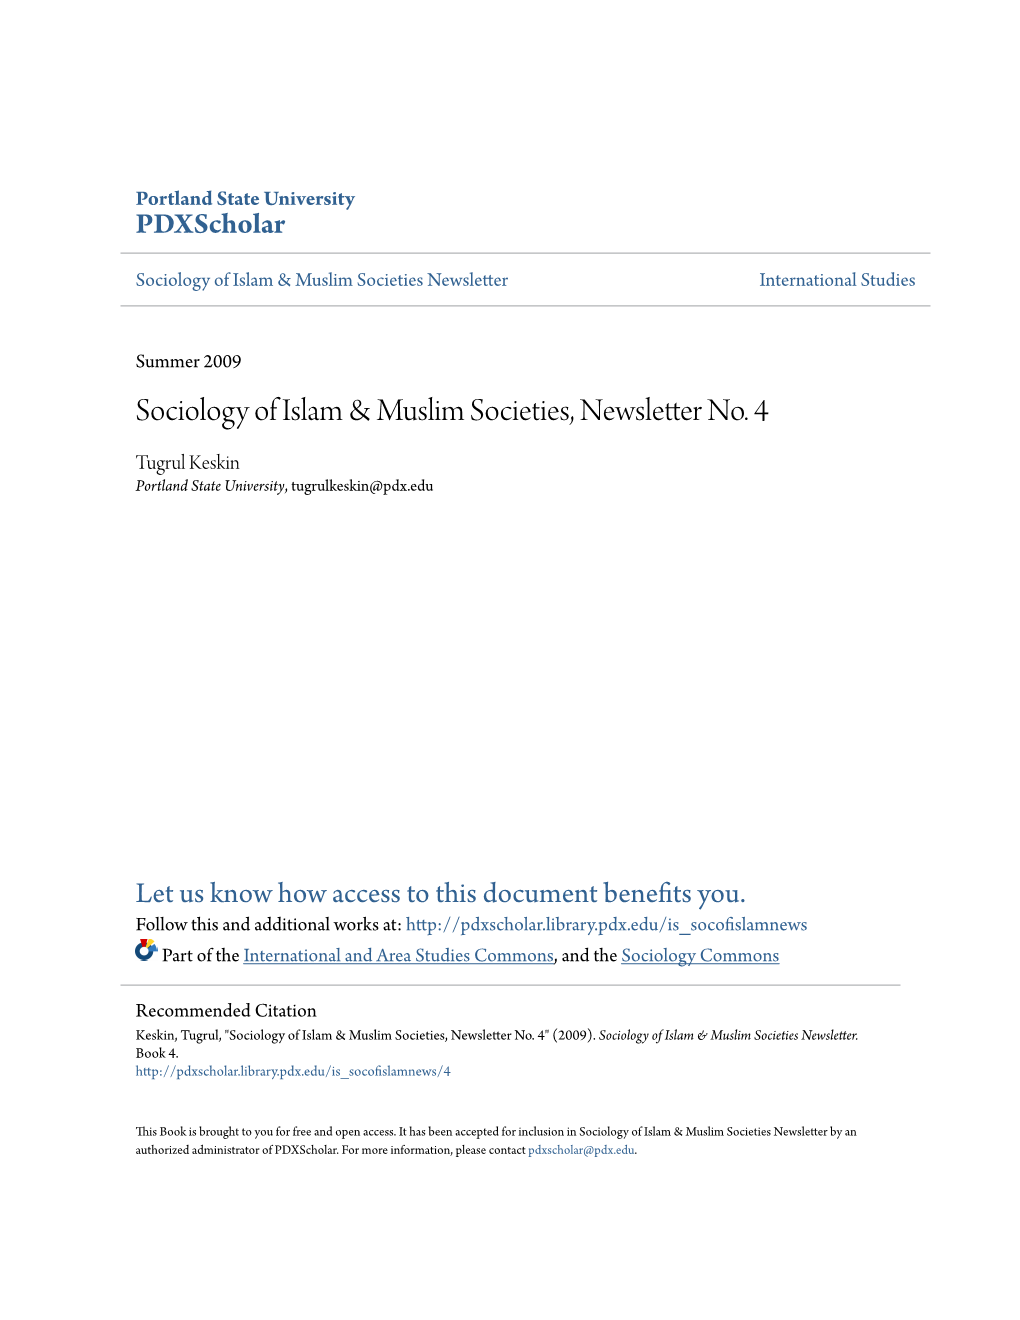 Sociology of Islam & Muslim Societies, Newsletter No. 4